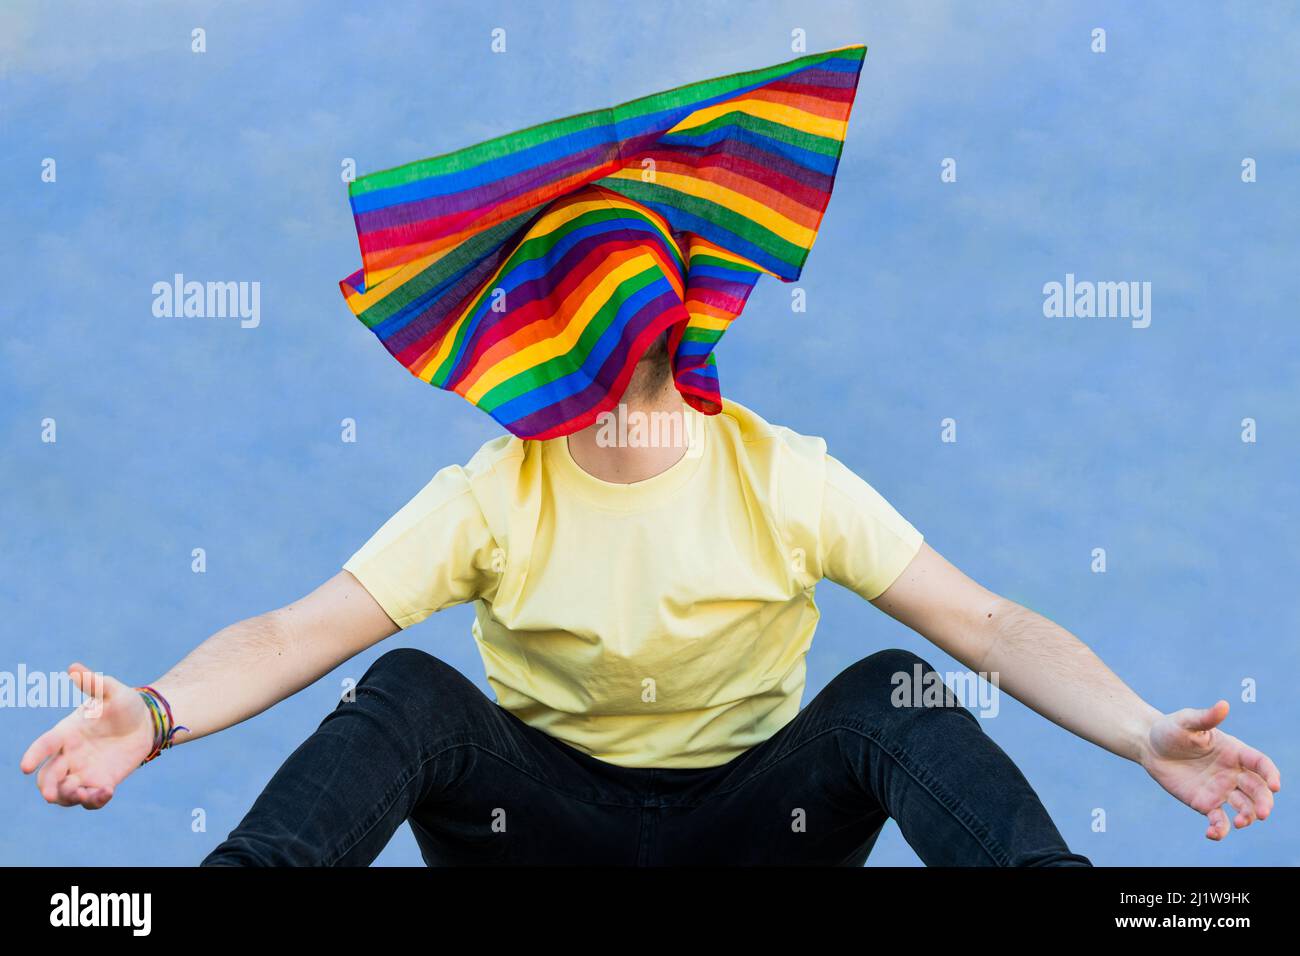 Nicht erkennbare Person, die Arme und Beine mit farbenfroher Regenbogenfahne auf dem Kopf ausbreitet, während sie vor blauem Hintergrund sitzt Stockfoto